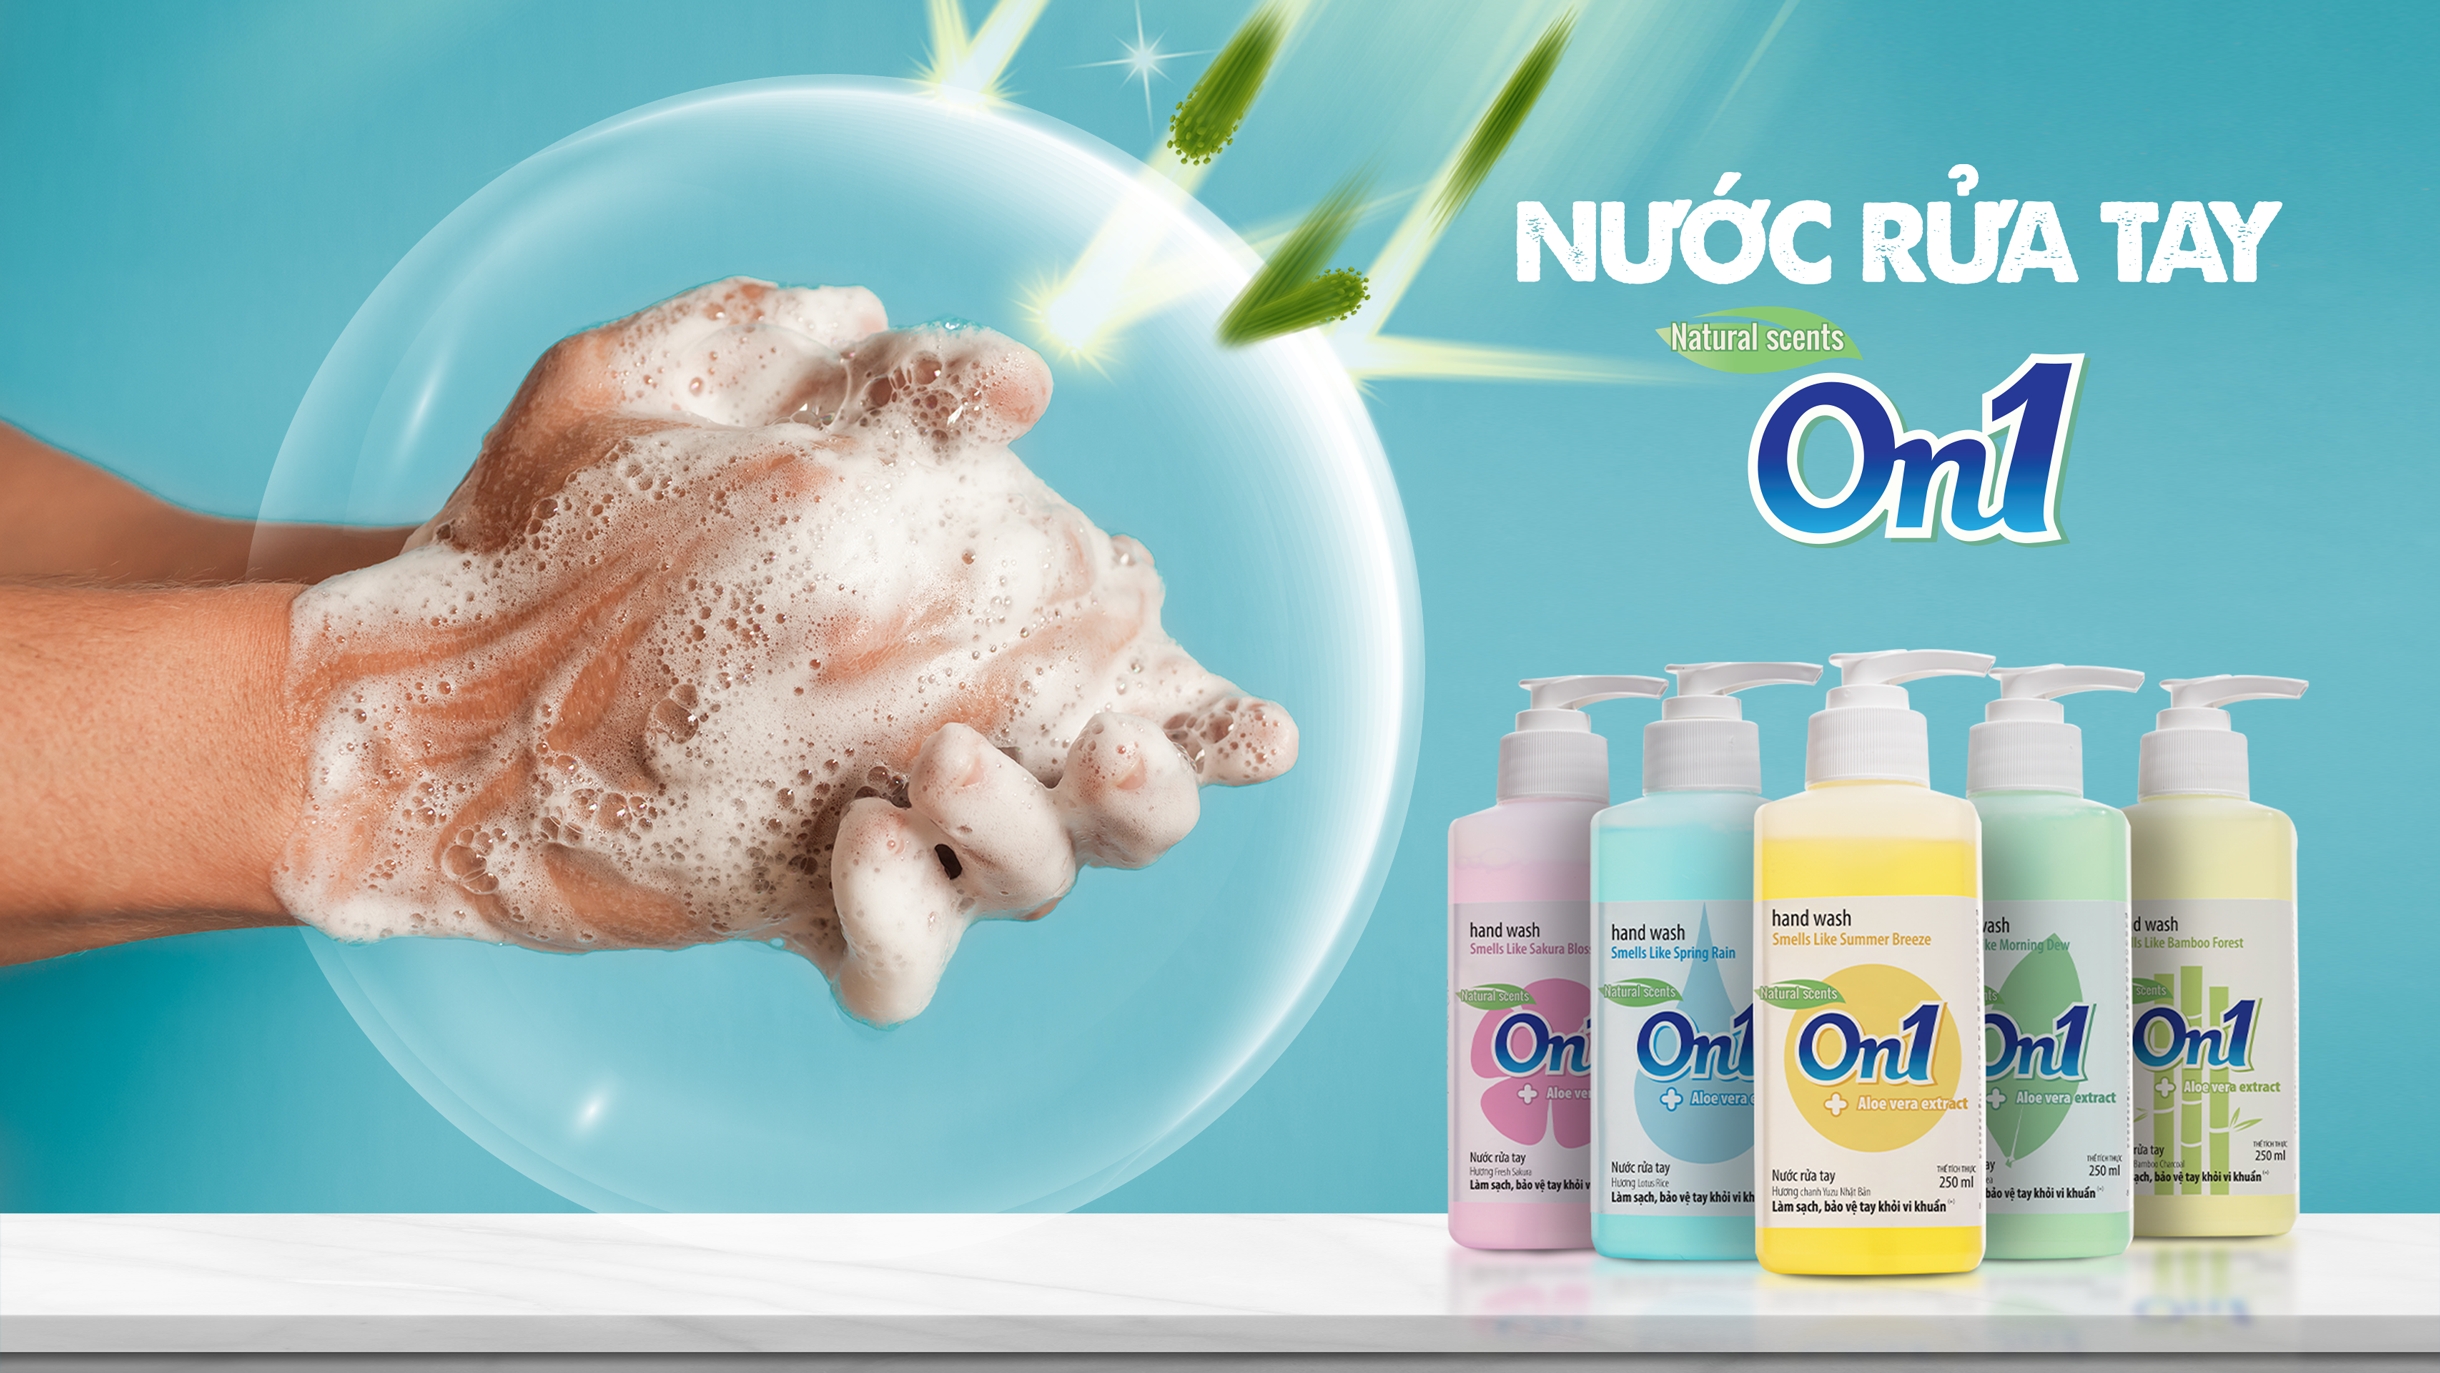 Lixco tiếp tục ra mắt sản phẩm nước rửa tay On1 ngăn ngừa vi khuẩn